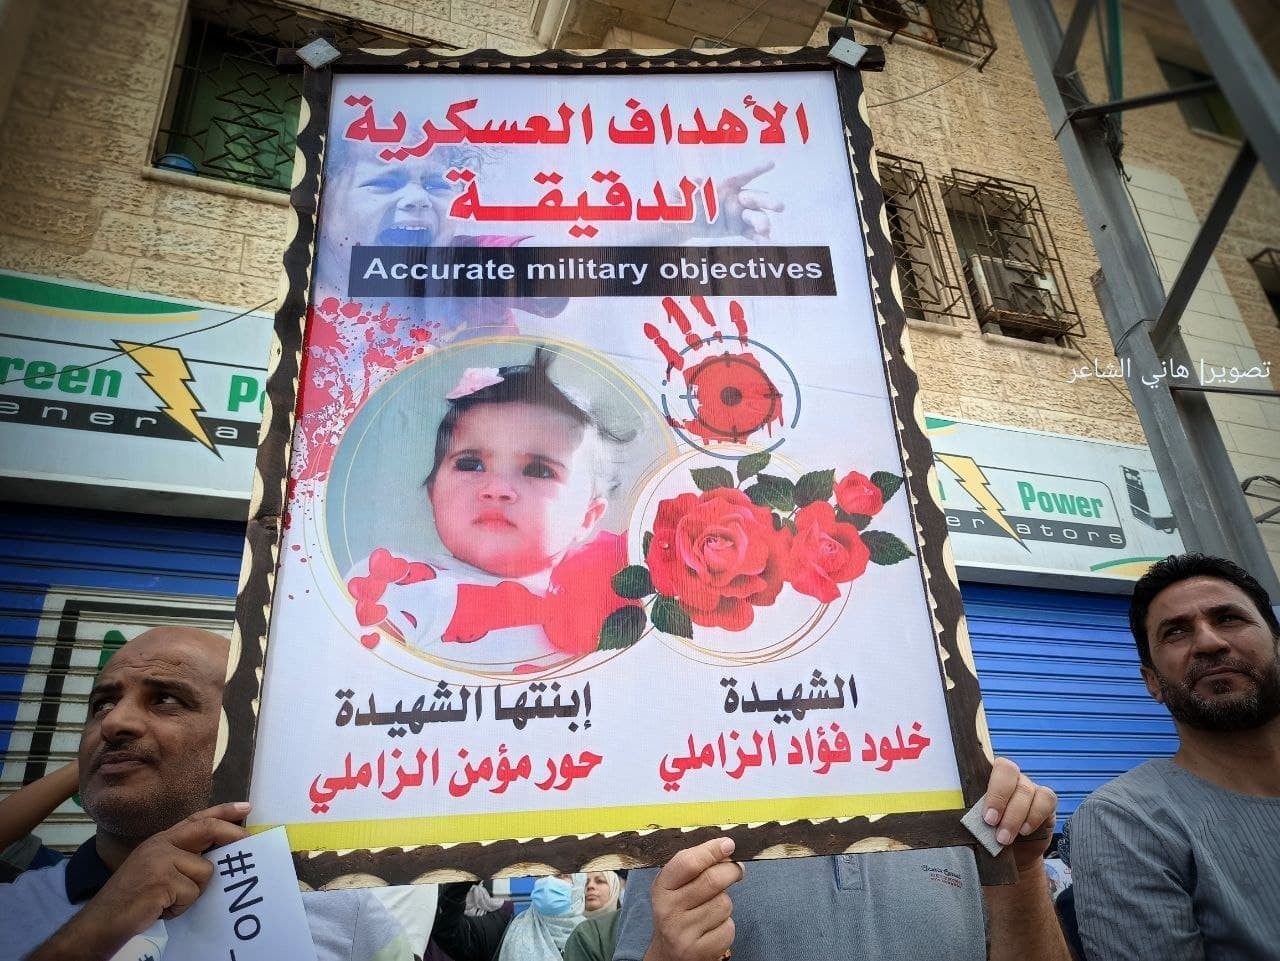 لآلاف يخرجون في غزة للمطالبة بإقالة مدير عمليات الوكالة ماتياس شمالي 33